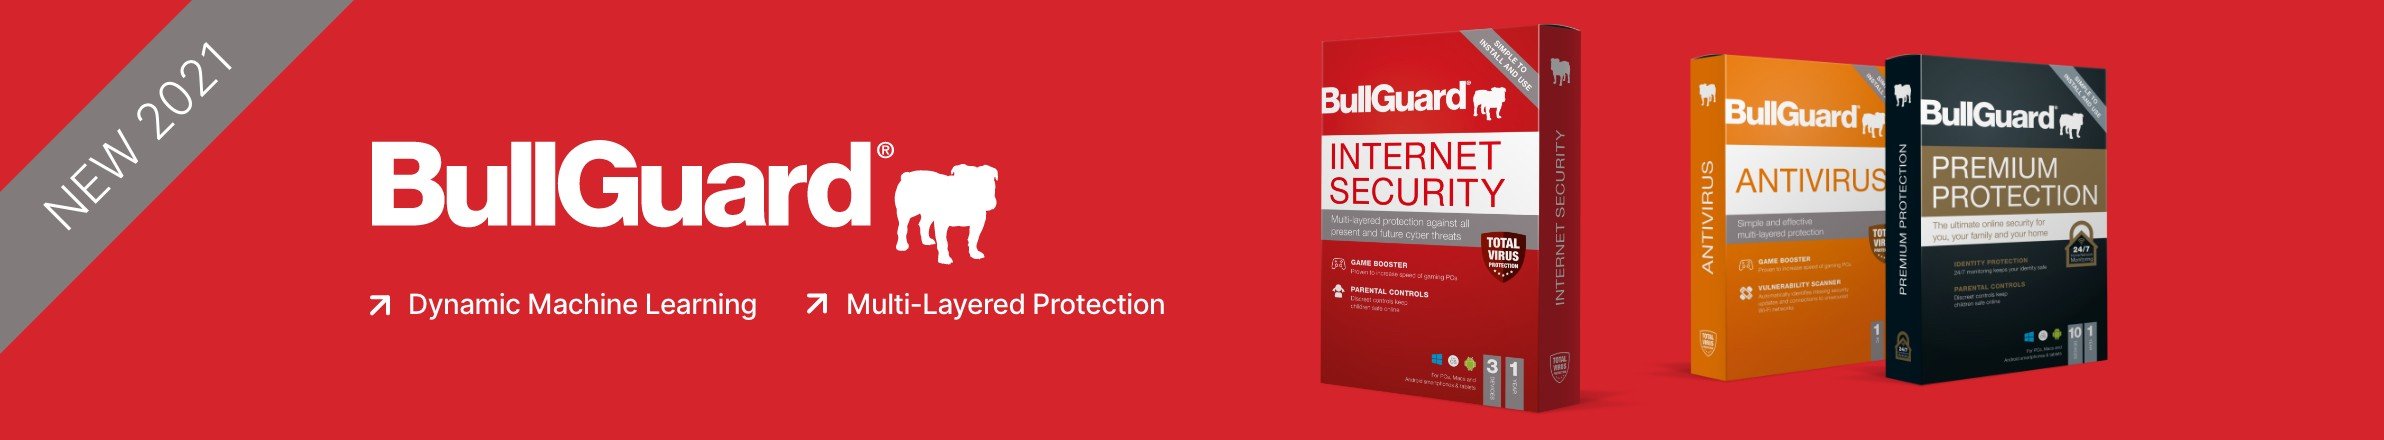 BullGuard Antivirus Software